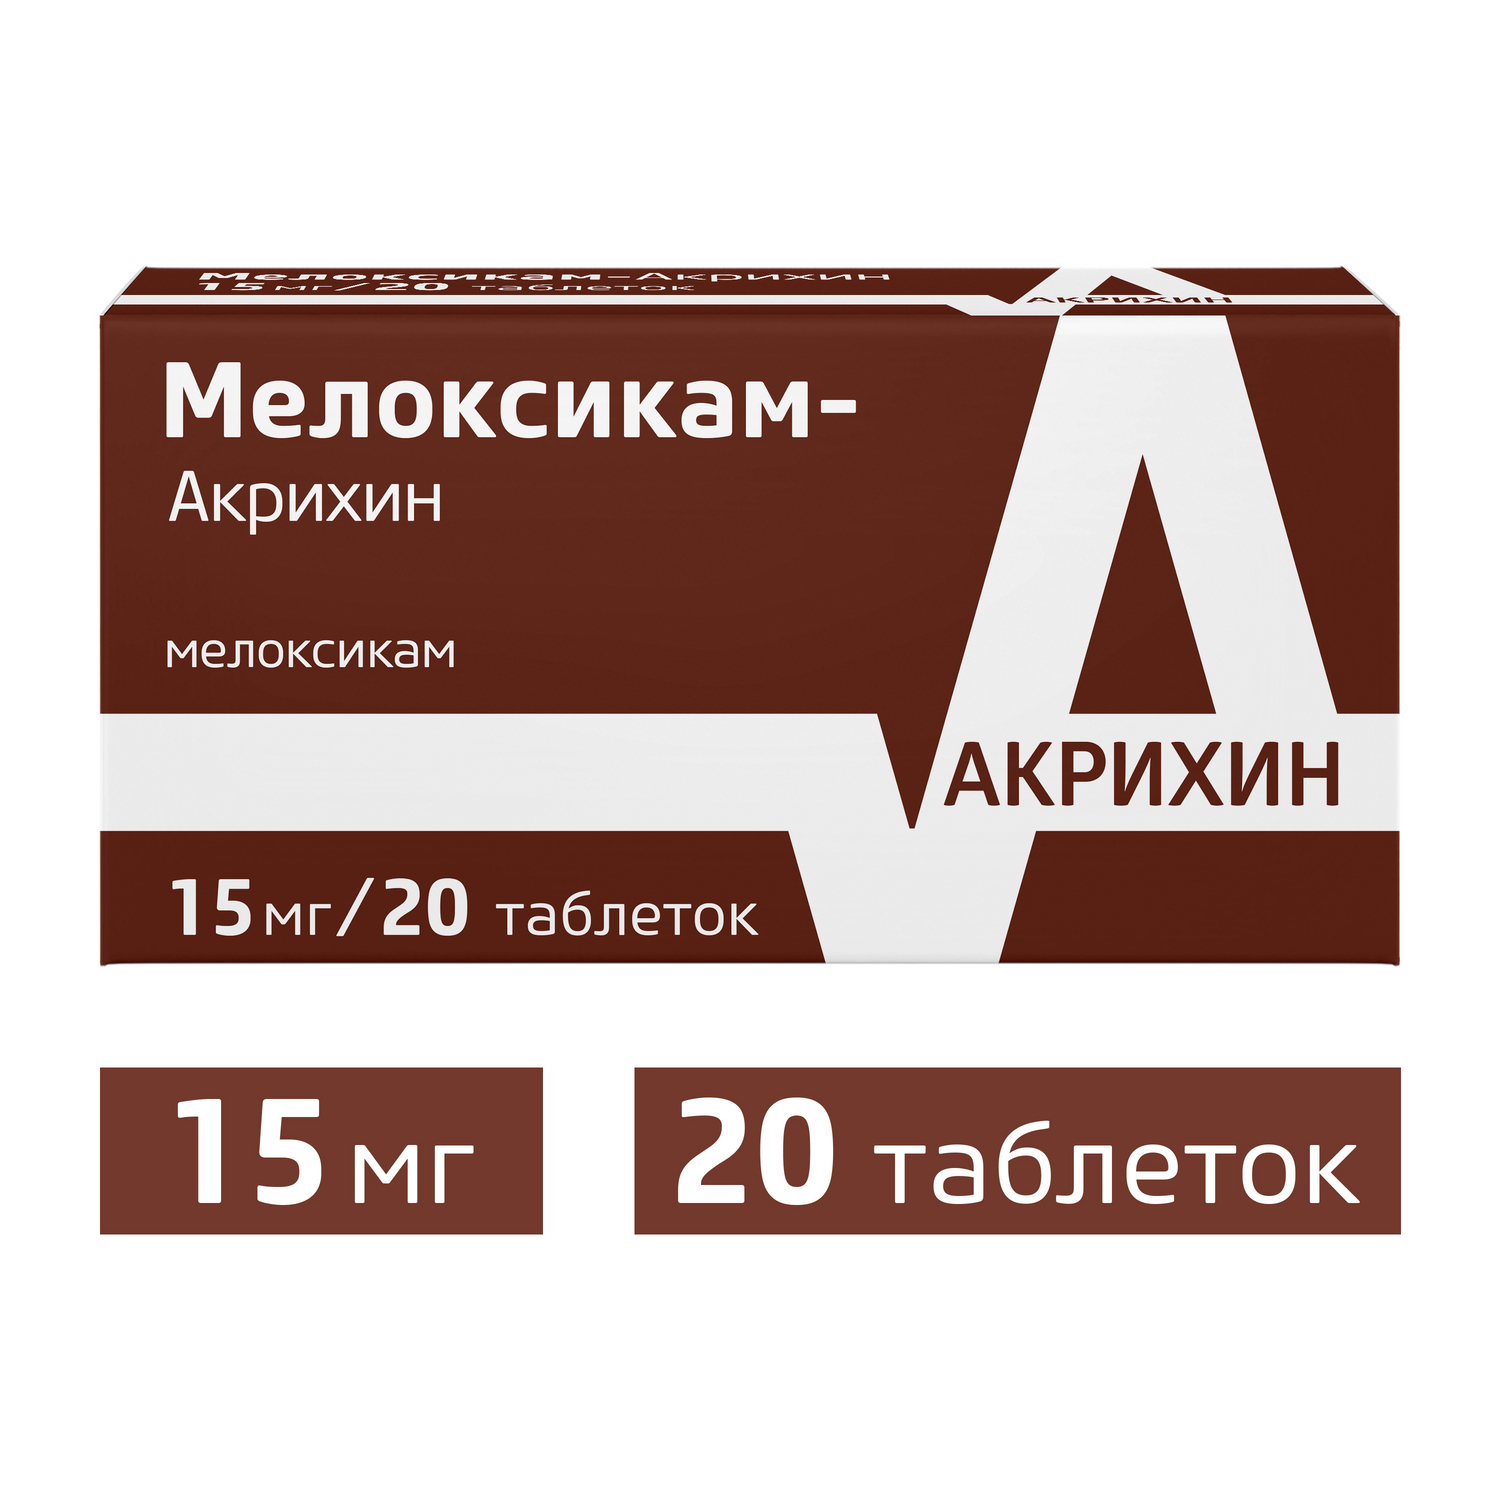 Мелоксикам-Акрихин табл. 15 мг № 20. Мелоксикам таблетки 15 мг. Мелоксикам Акрихин 15 мг. Мелоксикам Акрихин таб. 15мг №20.